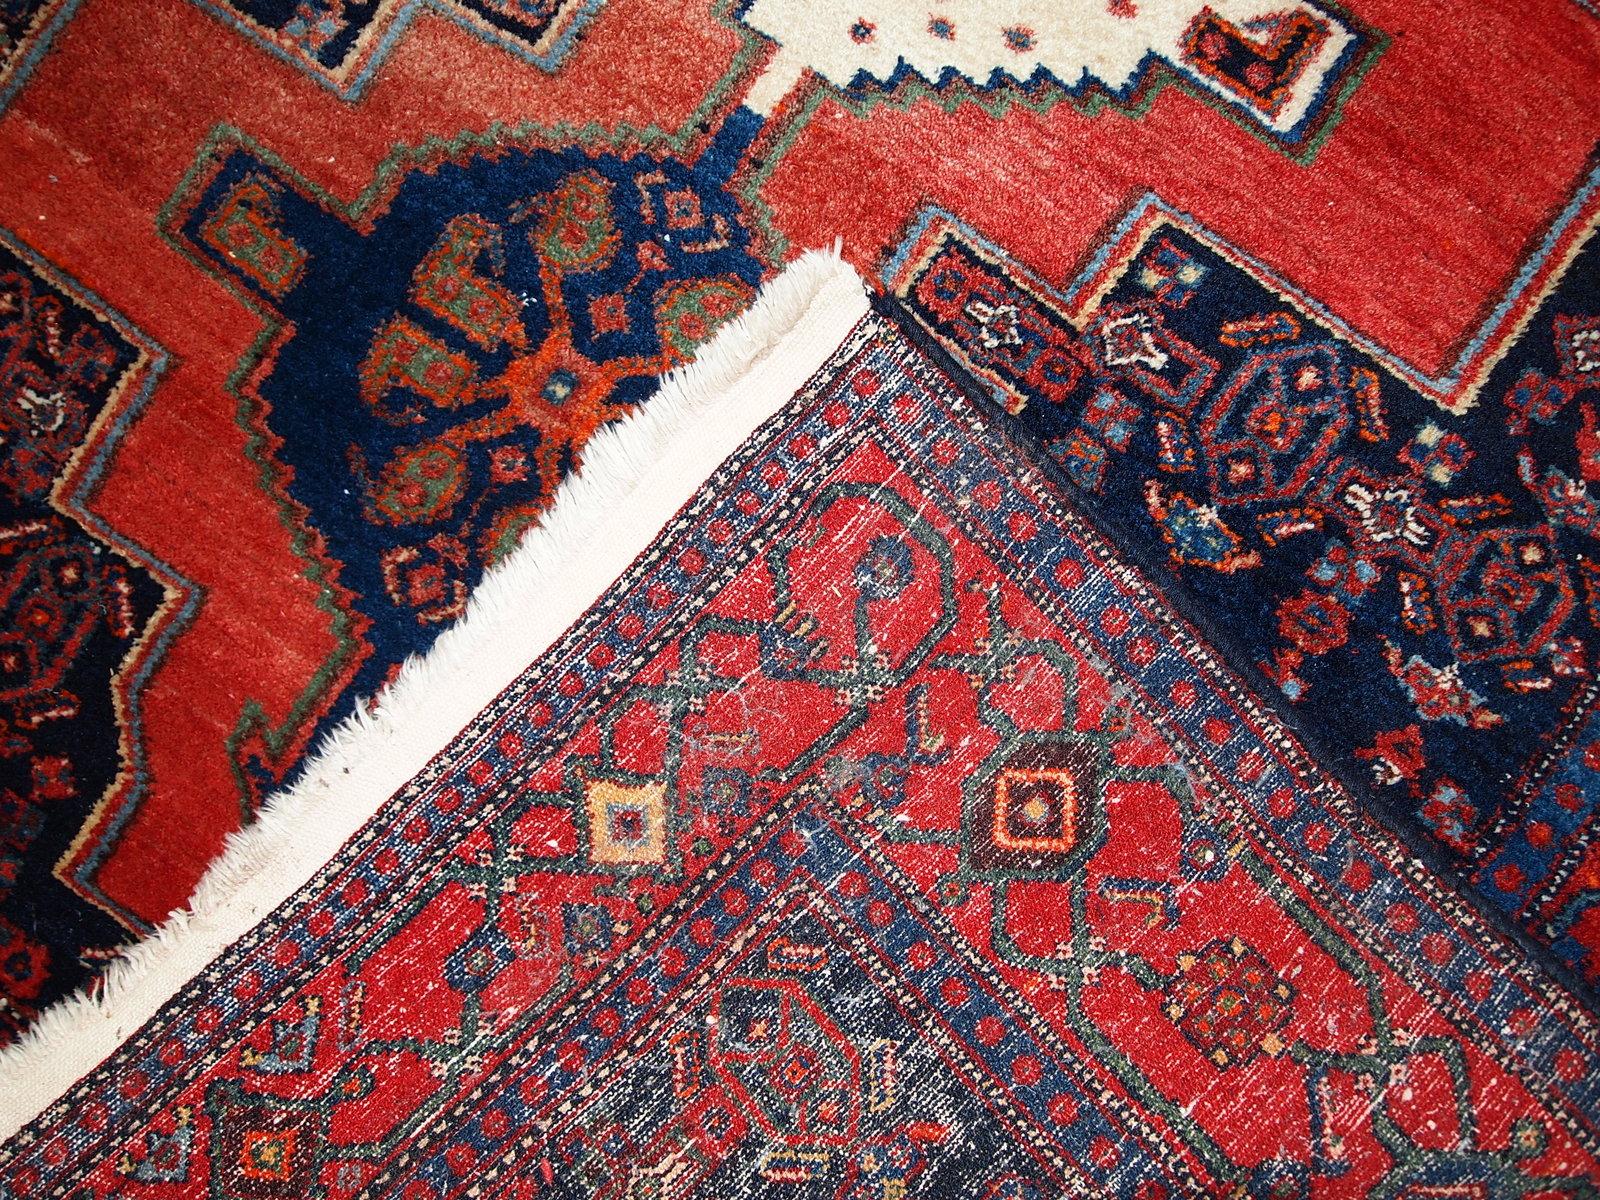 Handgefertigter Vintage-Teppich im Senneh-Stil in gutem Originalzustand. Der Teppich stammt aus der Mitte des 20. Jahrhunderts und ist aus Wolle gefertigt.

- Zustand: original gut,

- etwa 1960er Jahre,

- Größe 3,9' x 5,5' (119cm x